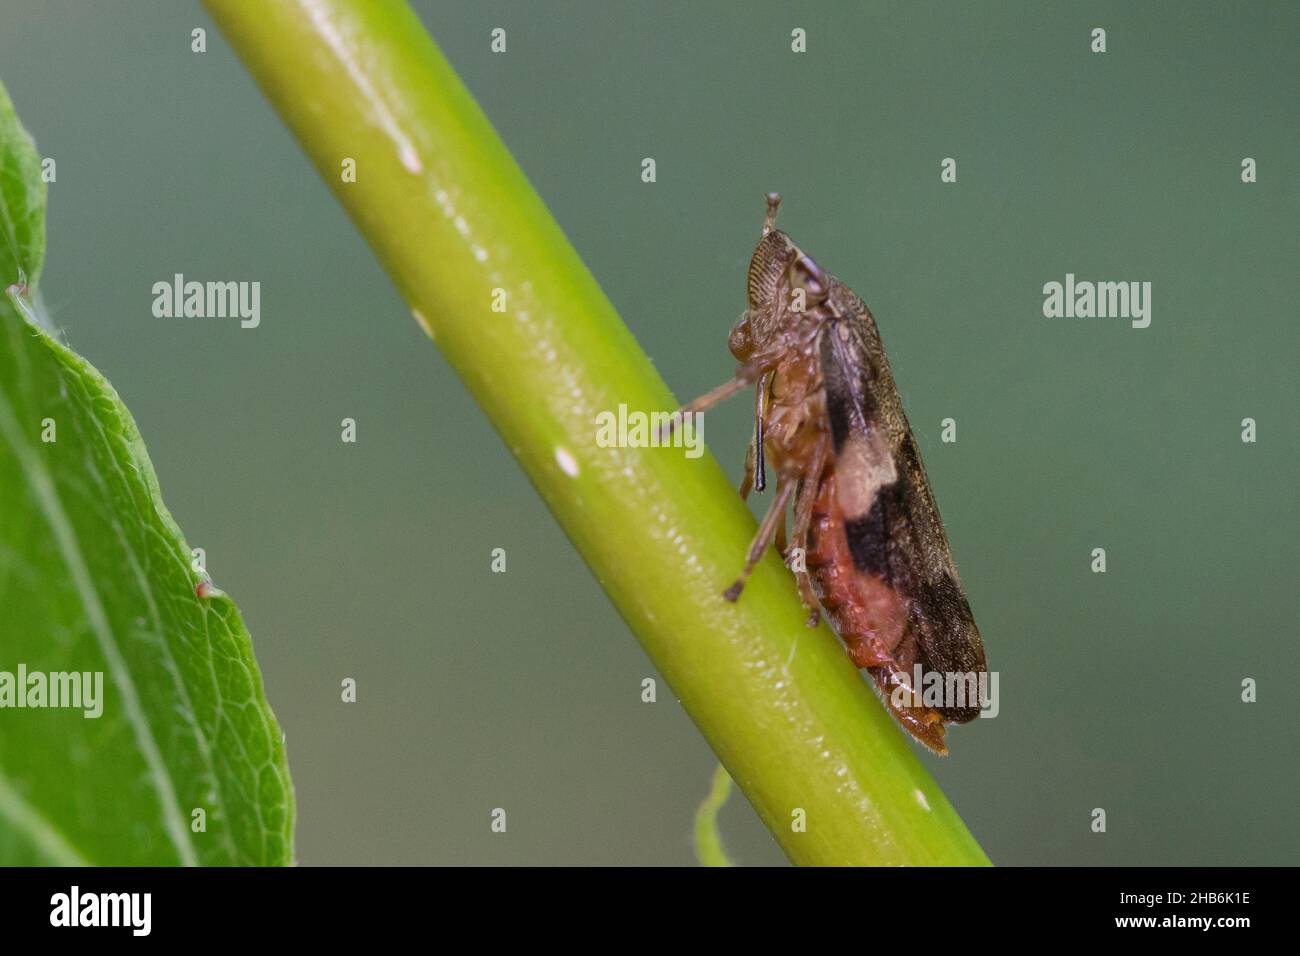 European alder spittle bug (Aphrophora alni), sits at a stem, Germany Stock Photo